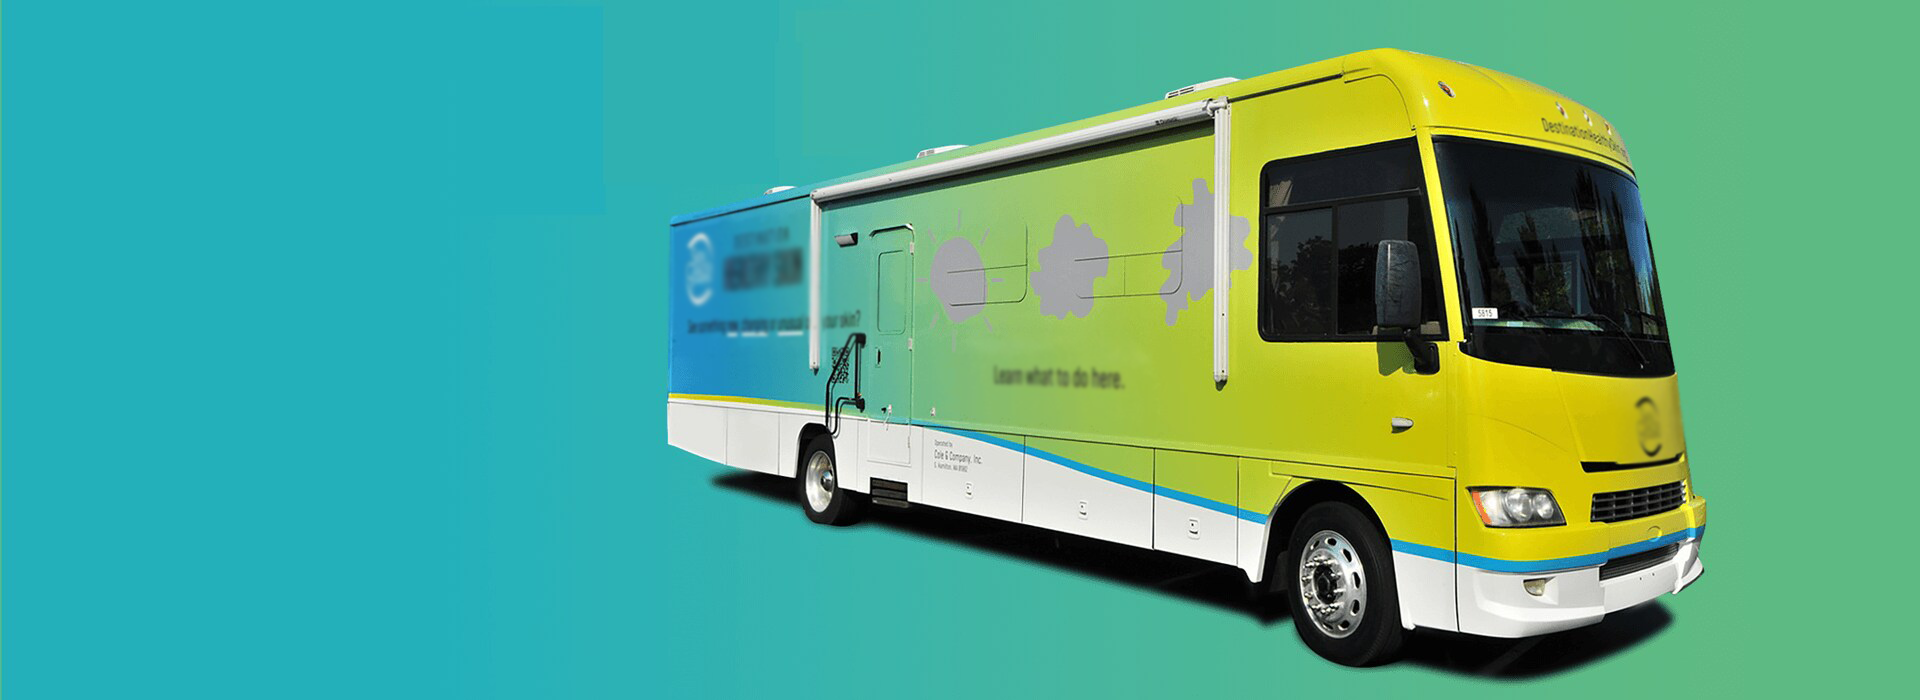 Mobile Medical Bus Dealer - Mobile Medical Buses Clinics